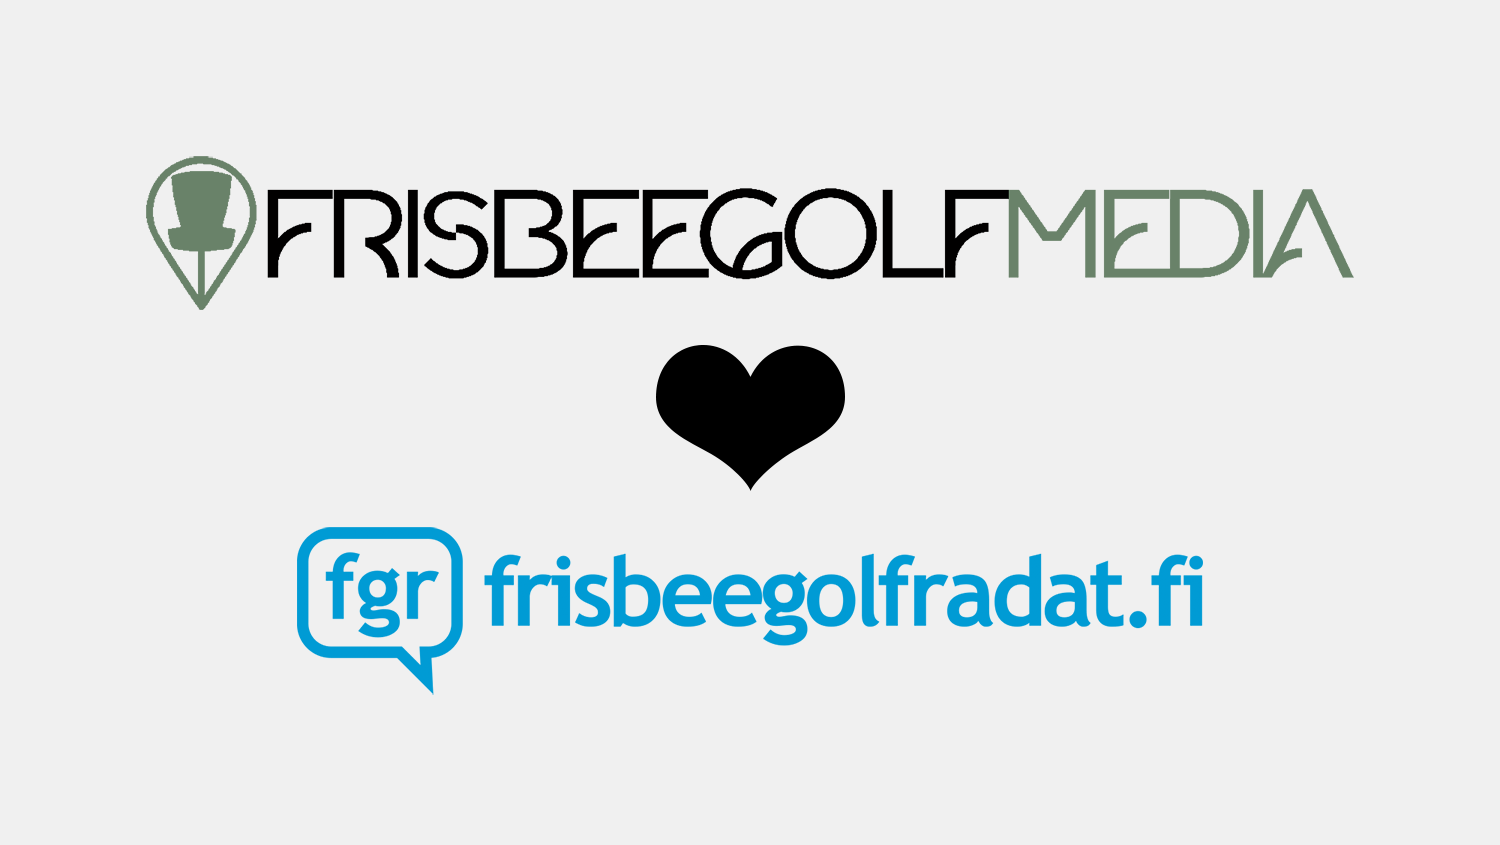 Frisbeegolfmedia x FGR